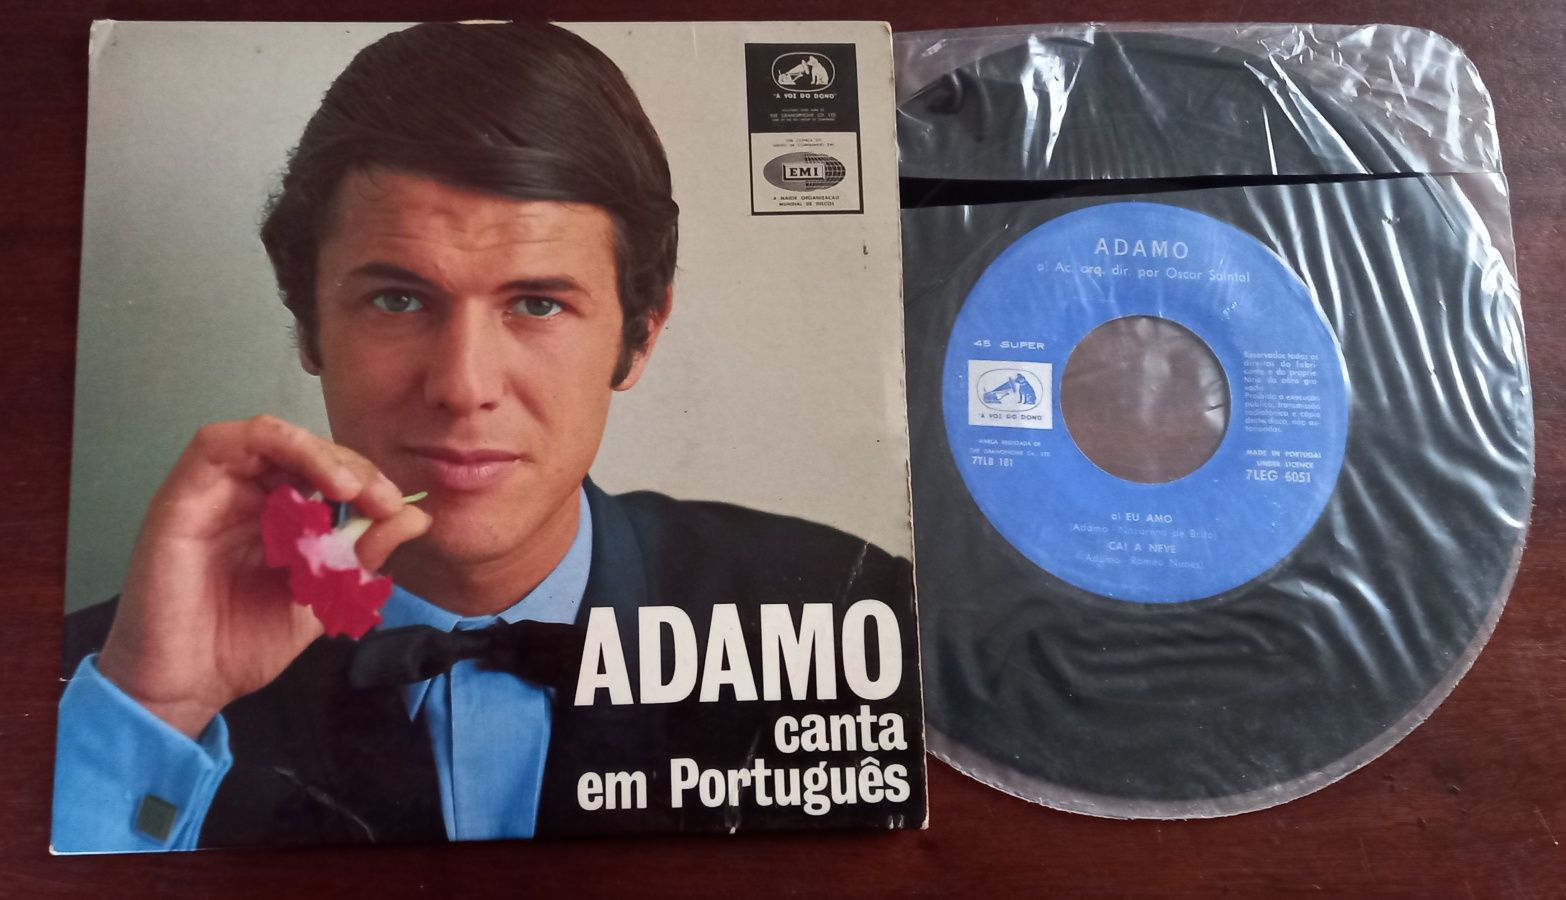 Adamo- Canta em Português - Single 7" de 1964